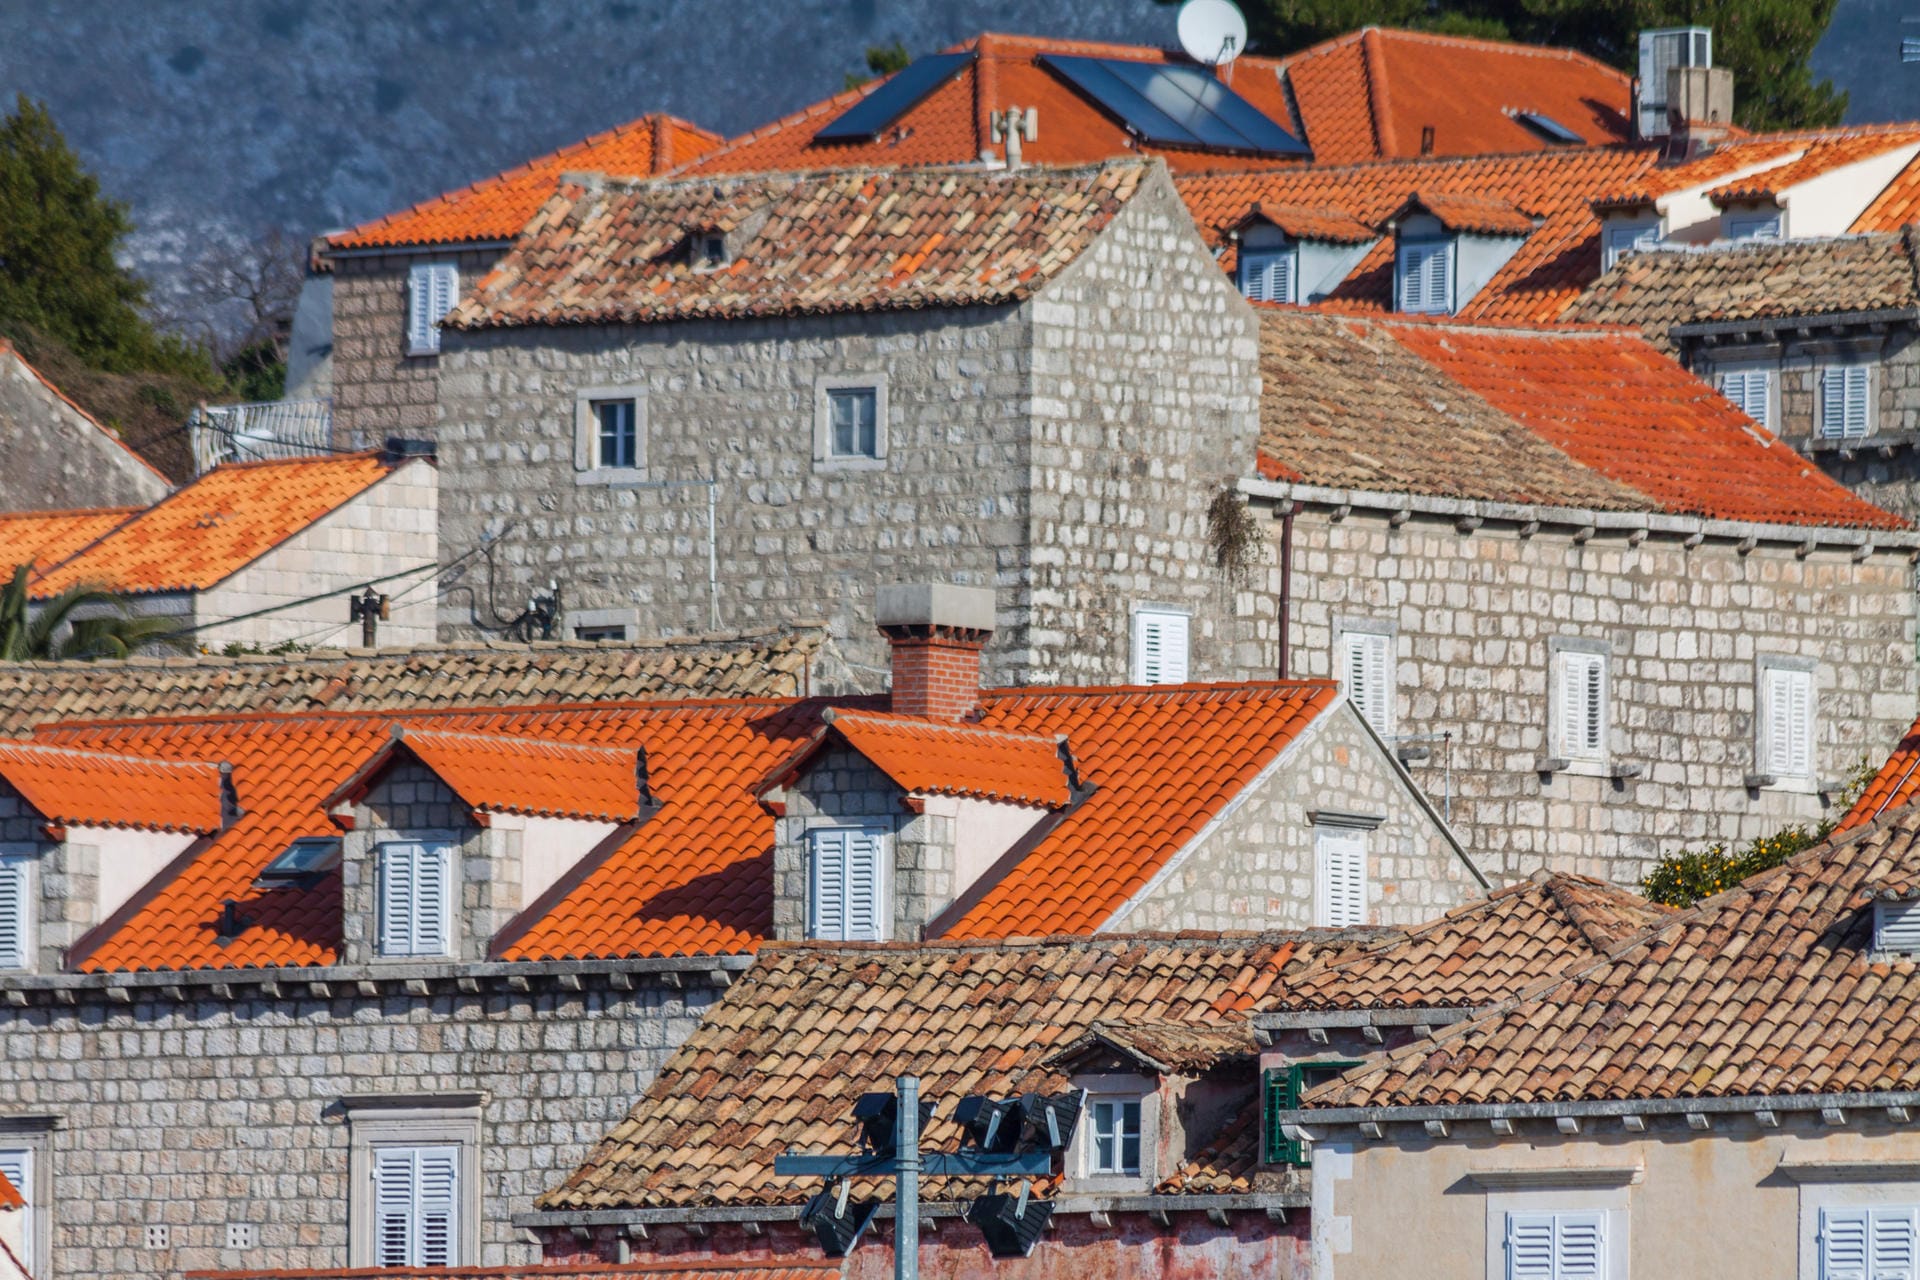 Es gibt viele schöne Regionen auf dieser Erde, aber die Dubrovniker sind davon überzeugt, dass ihre am schönsten ist.